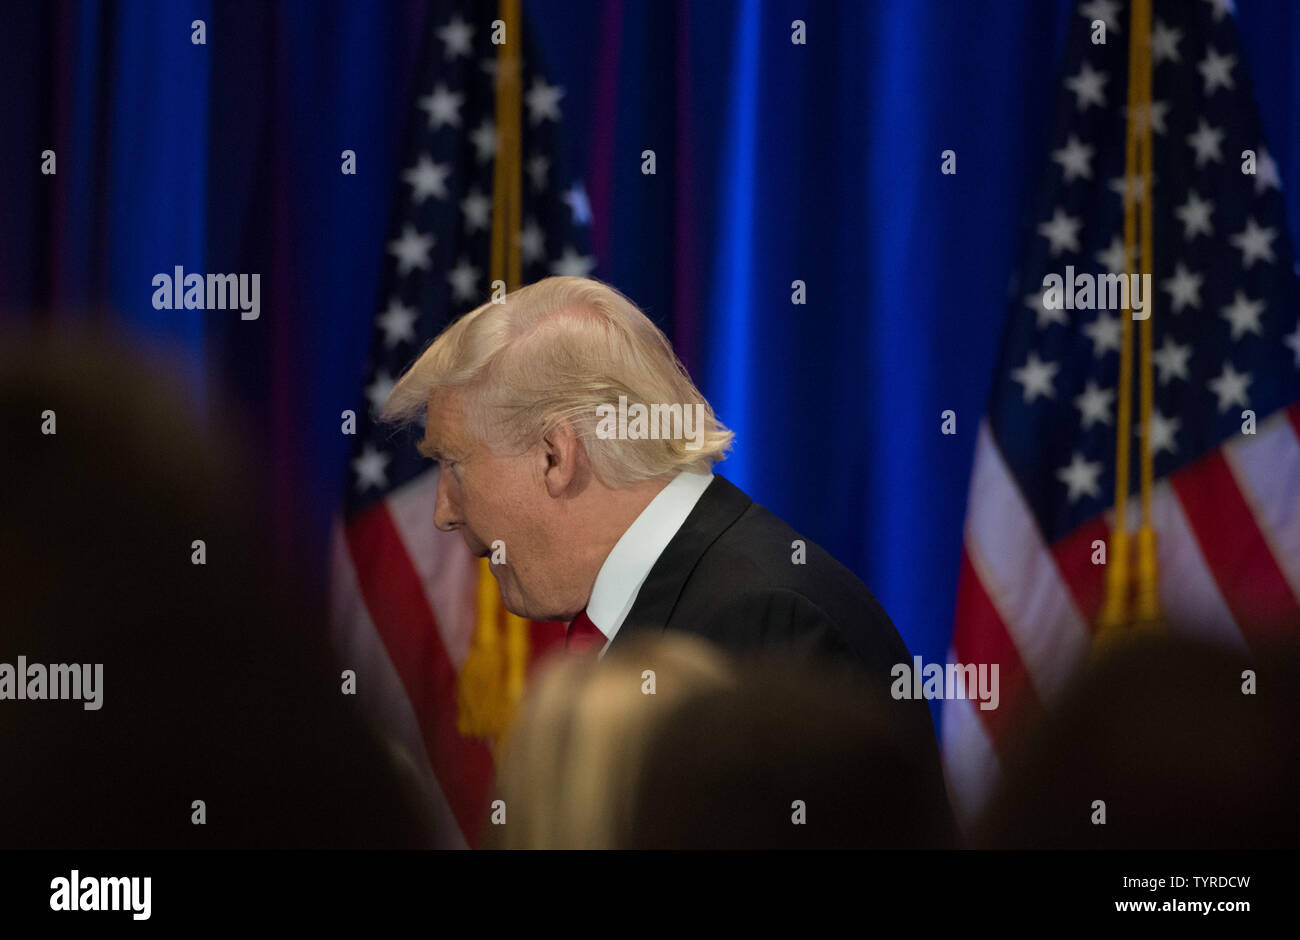 Candidato repubblicano per il presidente Donald Trump parla al Trump Soho Hotel, 22 giugno 2016 a New York City. Foto di Bryan R. Smith/UPI Foto Stock